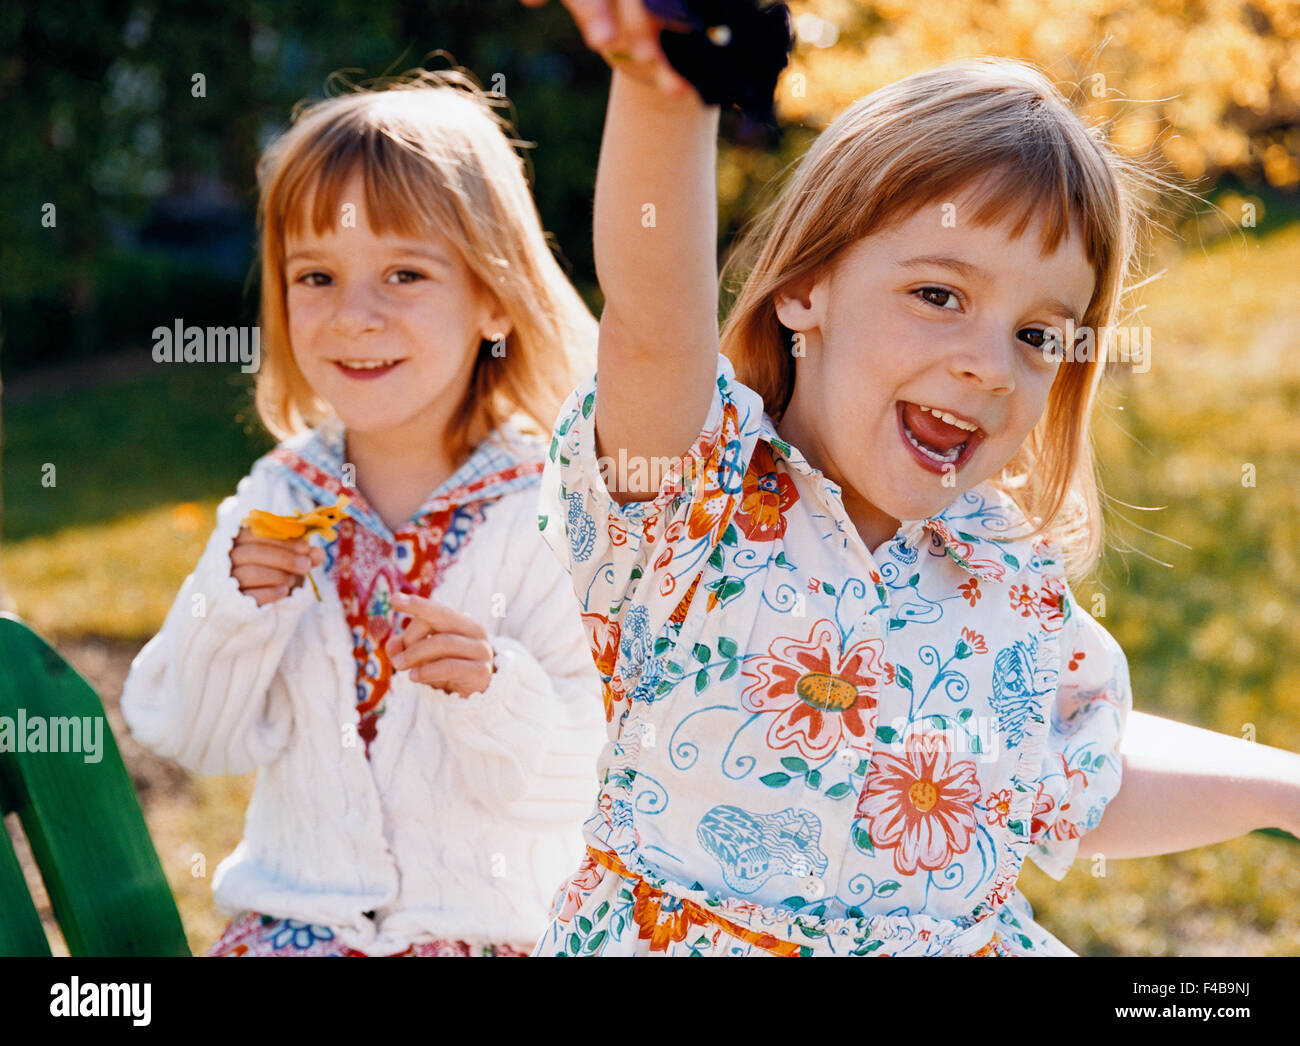 Katalog 2 Kinder nur Farbe Bild Grundschulkind Gefühle front Ansicht Mädchen Glück glücklich horizontale lachende betrachten Stockfoto